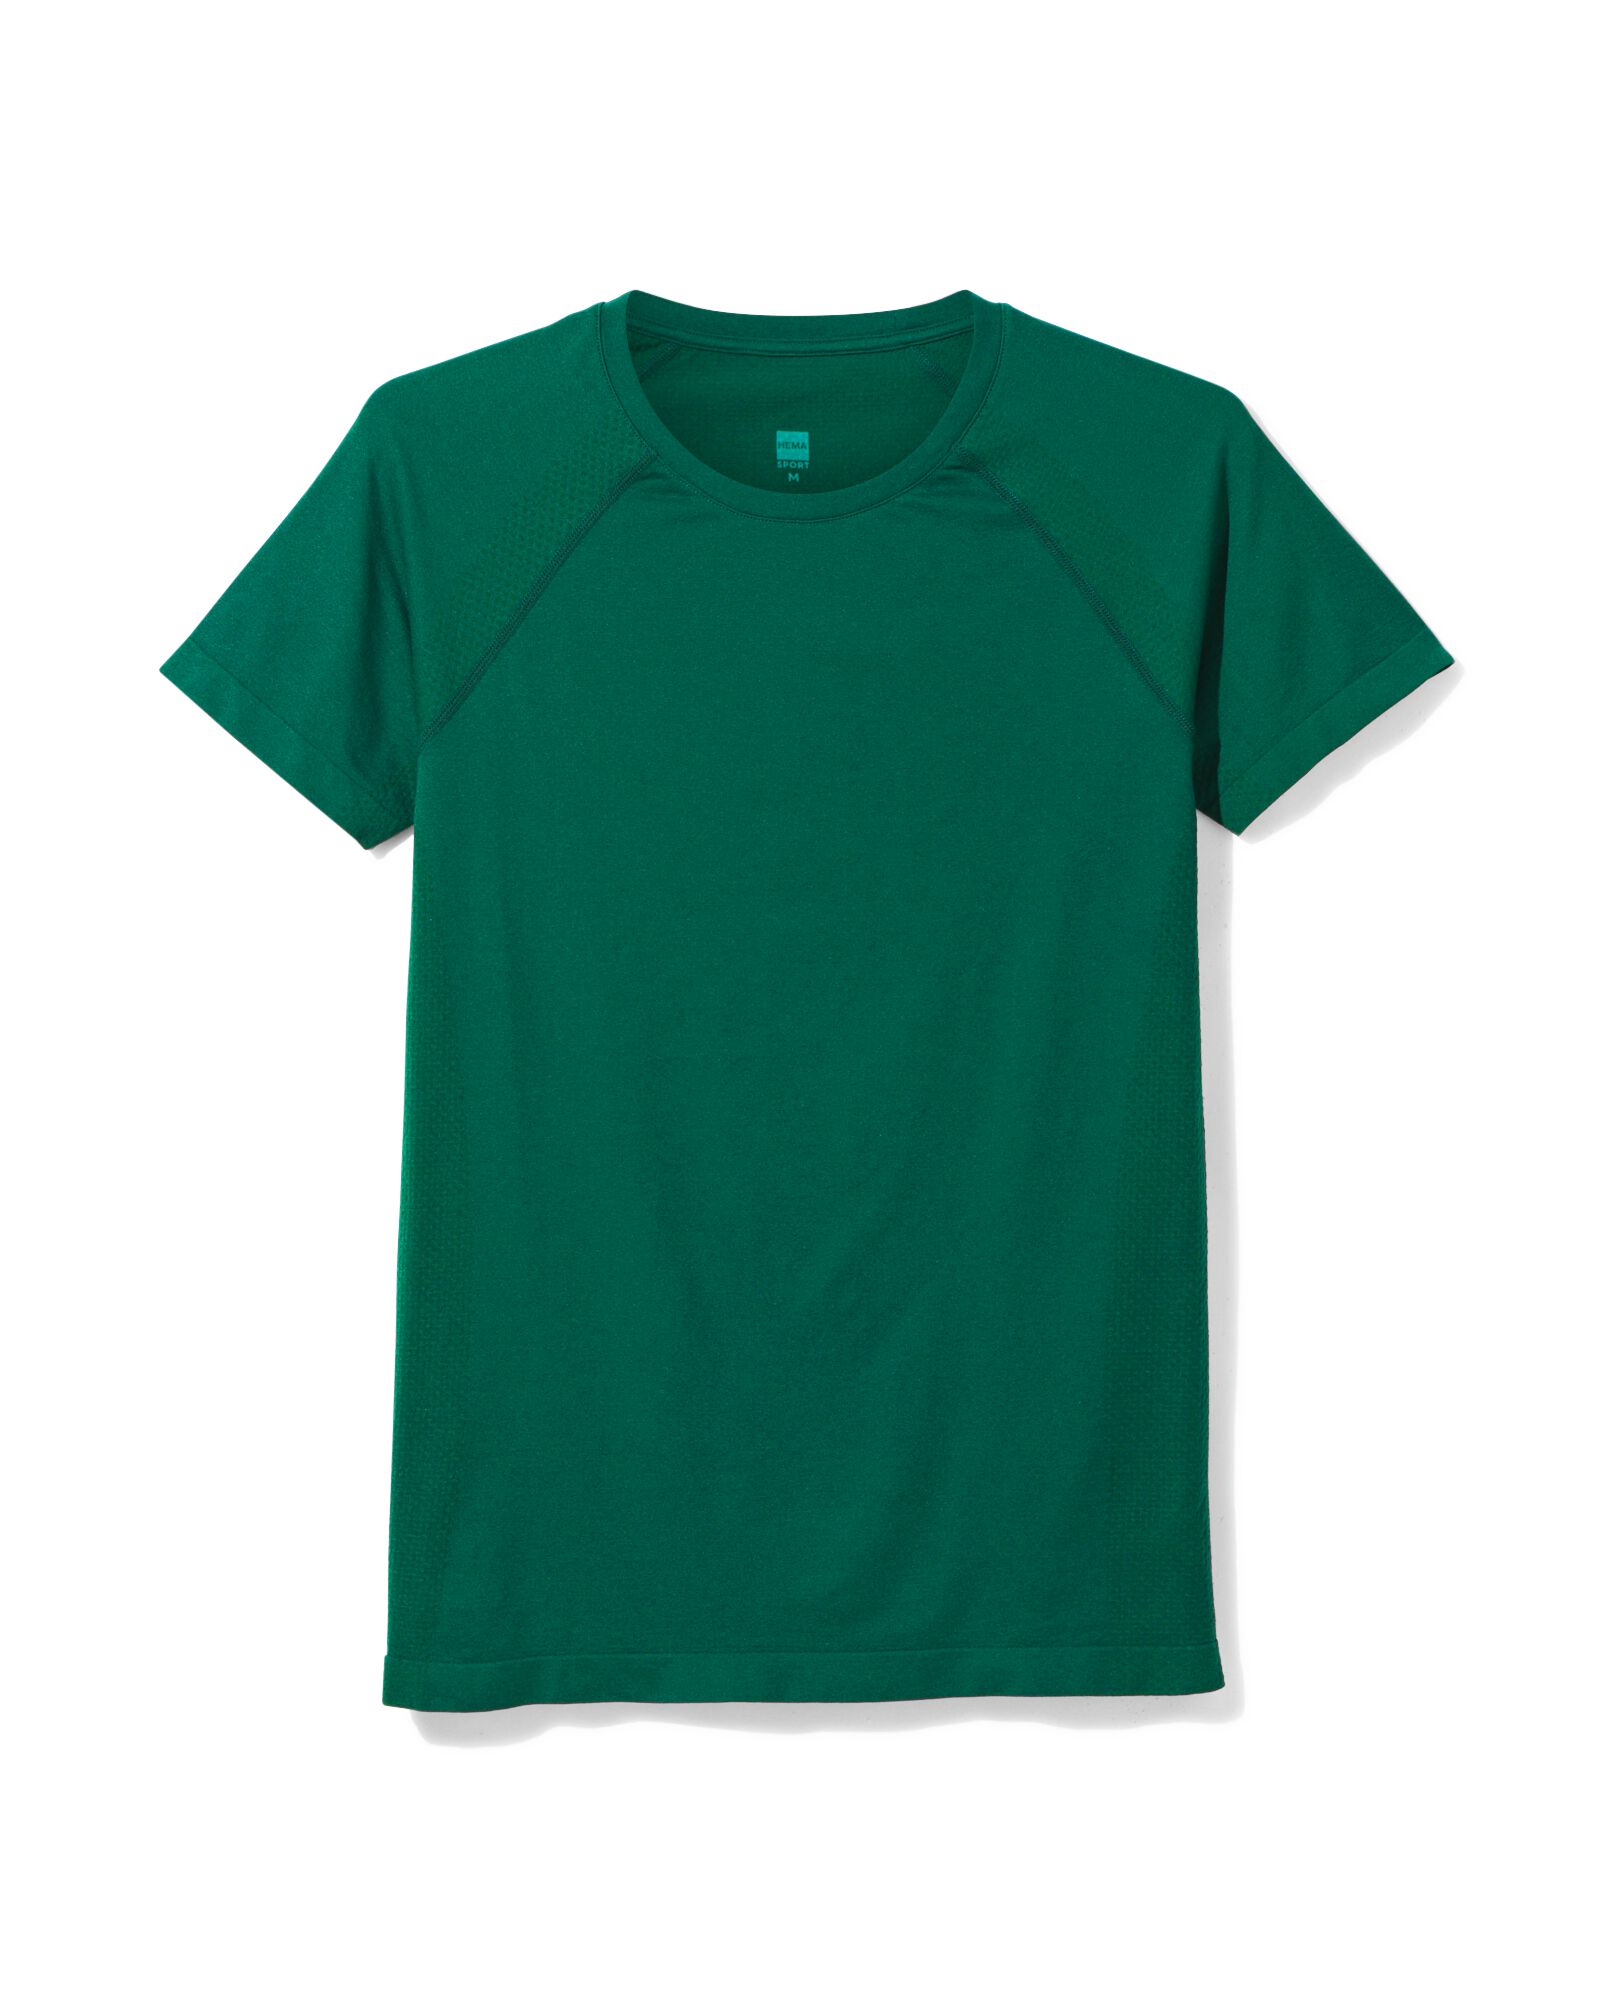 Damen-Sportshirt, nahtlos dunkelgrün dunkelgrün - 36090116DARKGREEN - HEMA